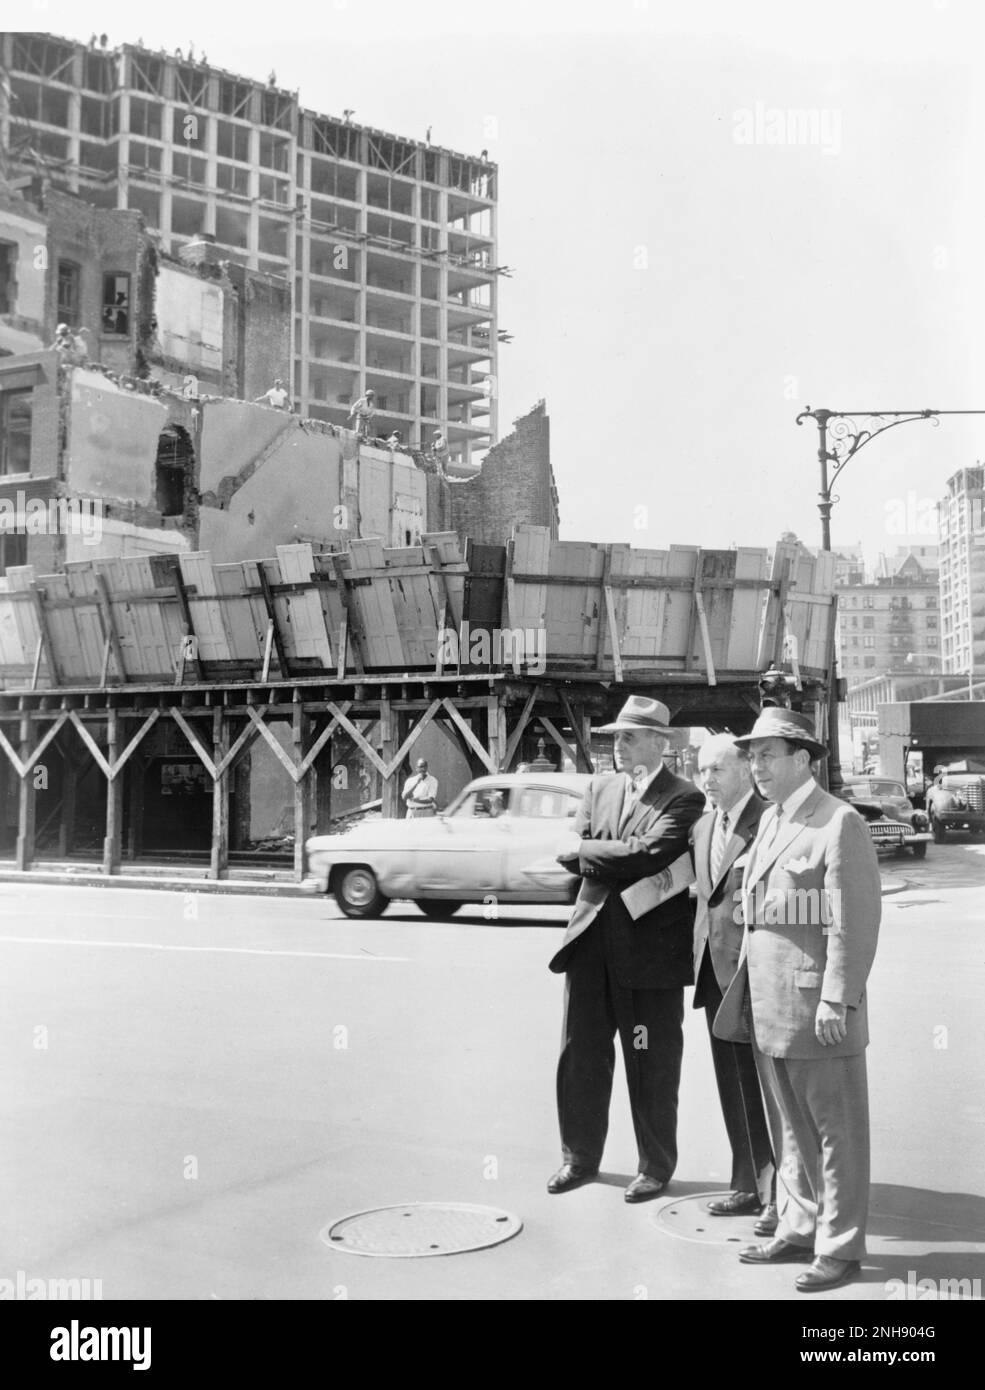 Robert Wagner, maire de la ville de New York (r), accompagné de Robert Moses (l) et Frank Meistrell (c) lors d'une tournée de projets d'habitation à New York. Photographié par Walter Albertin, 9 août 1956. Banque D'Images